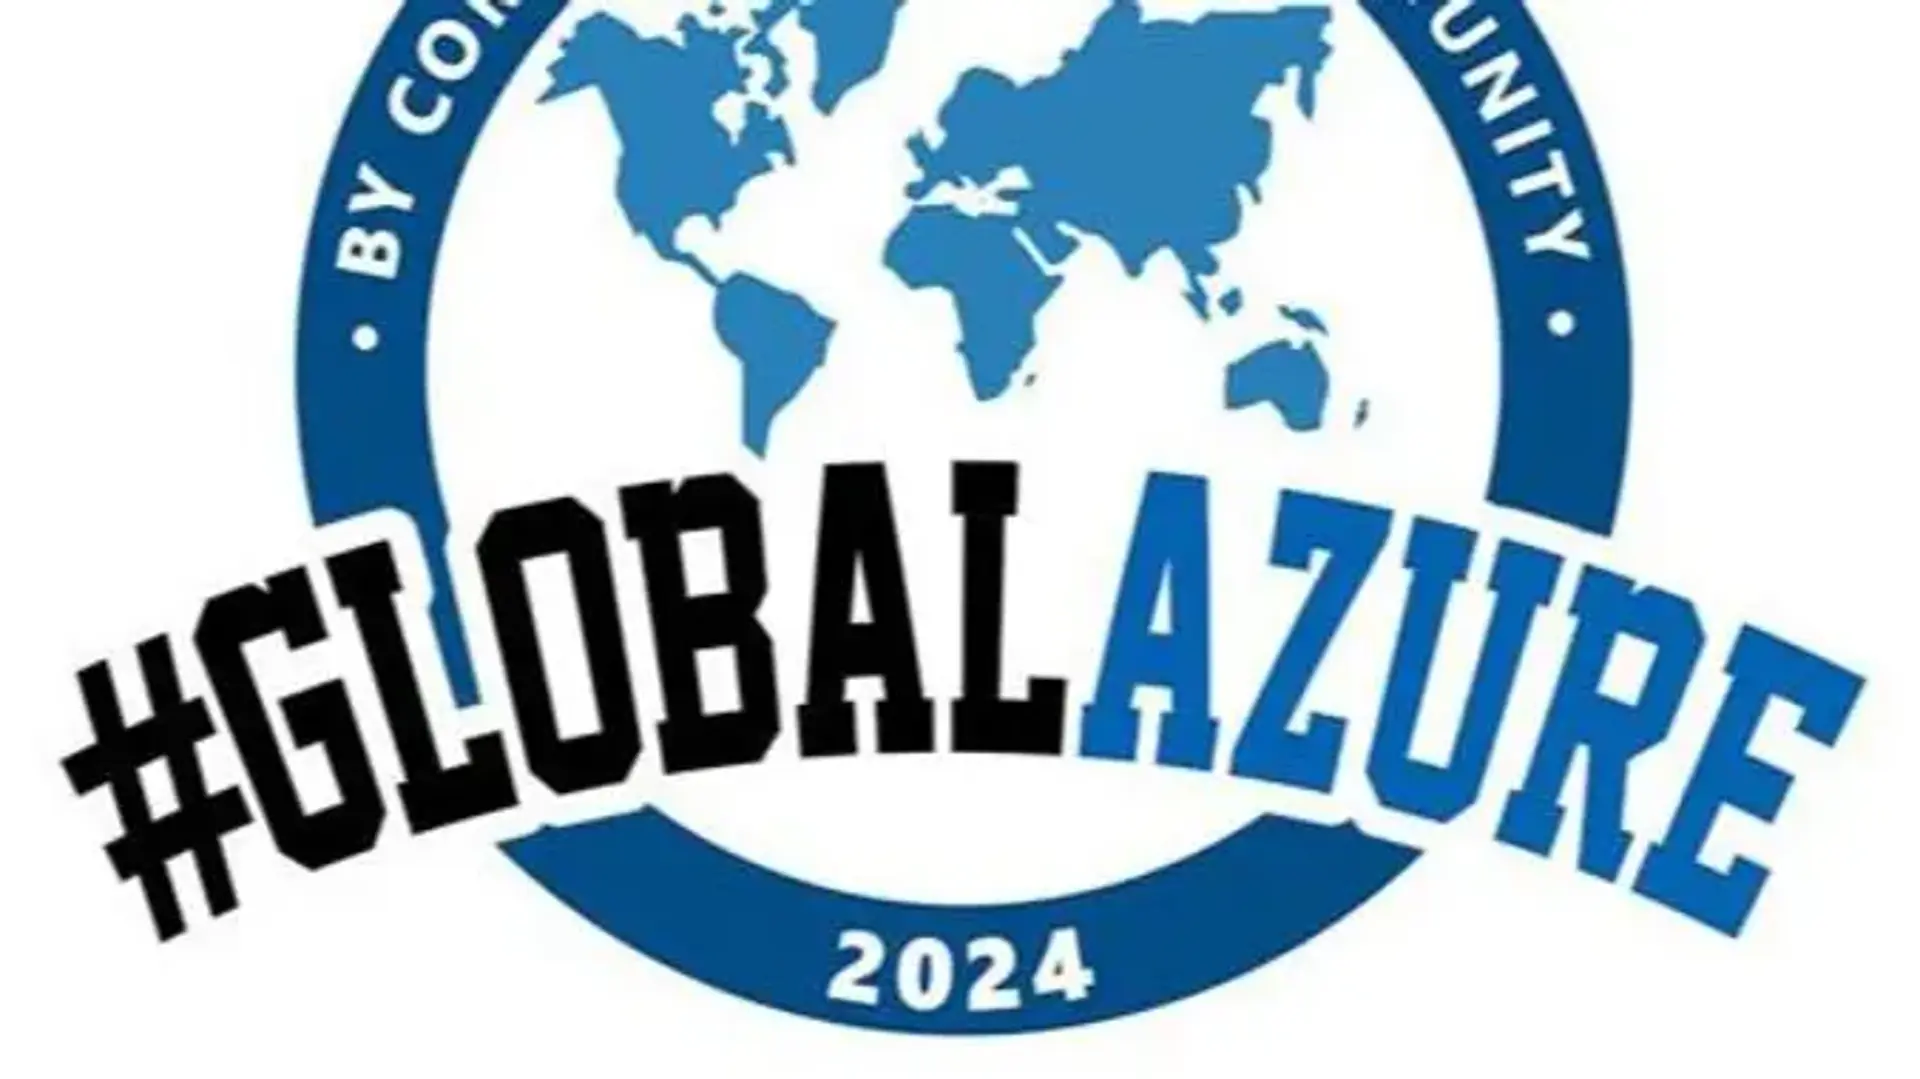 Global Azure Bootcamp 2024 - UAE